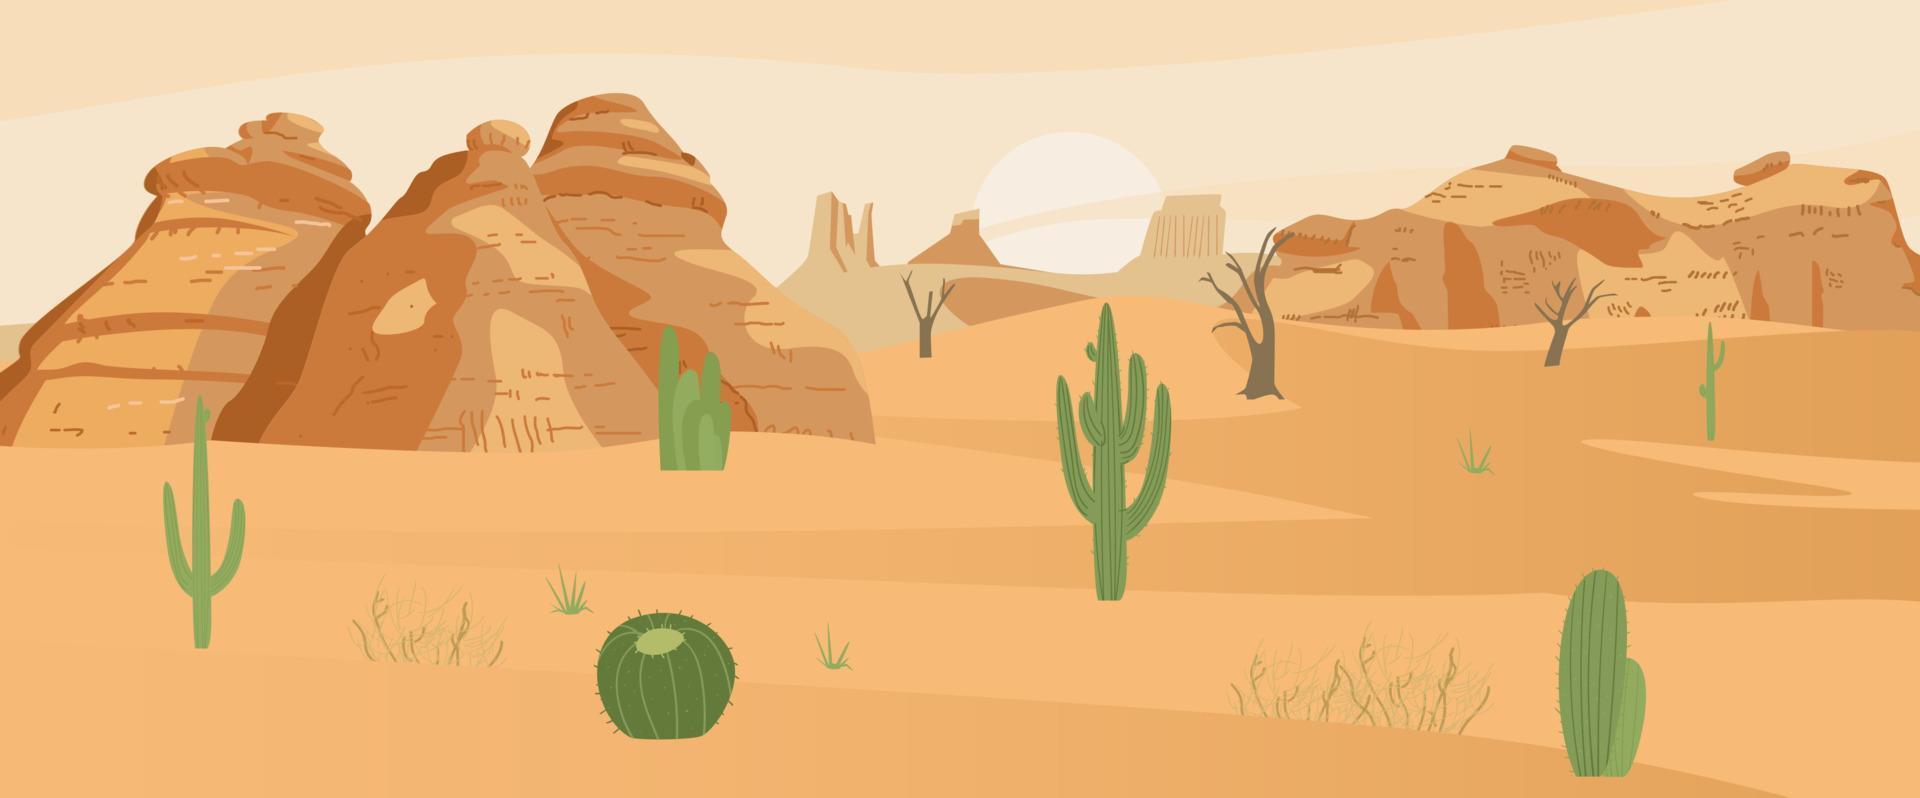 Wüstenlandschaft mit Kakteen und Sandfelsen. flache vektorillustration. vektor